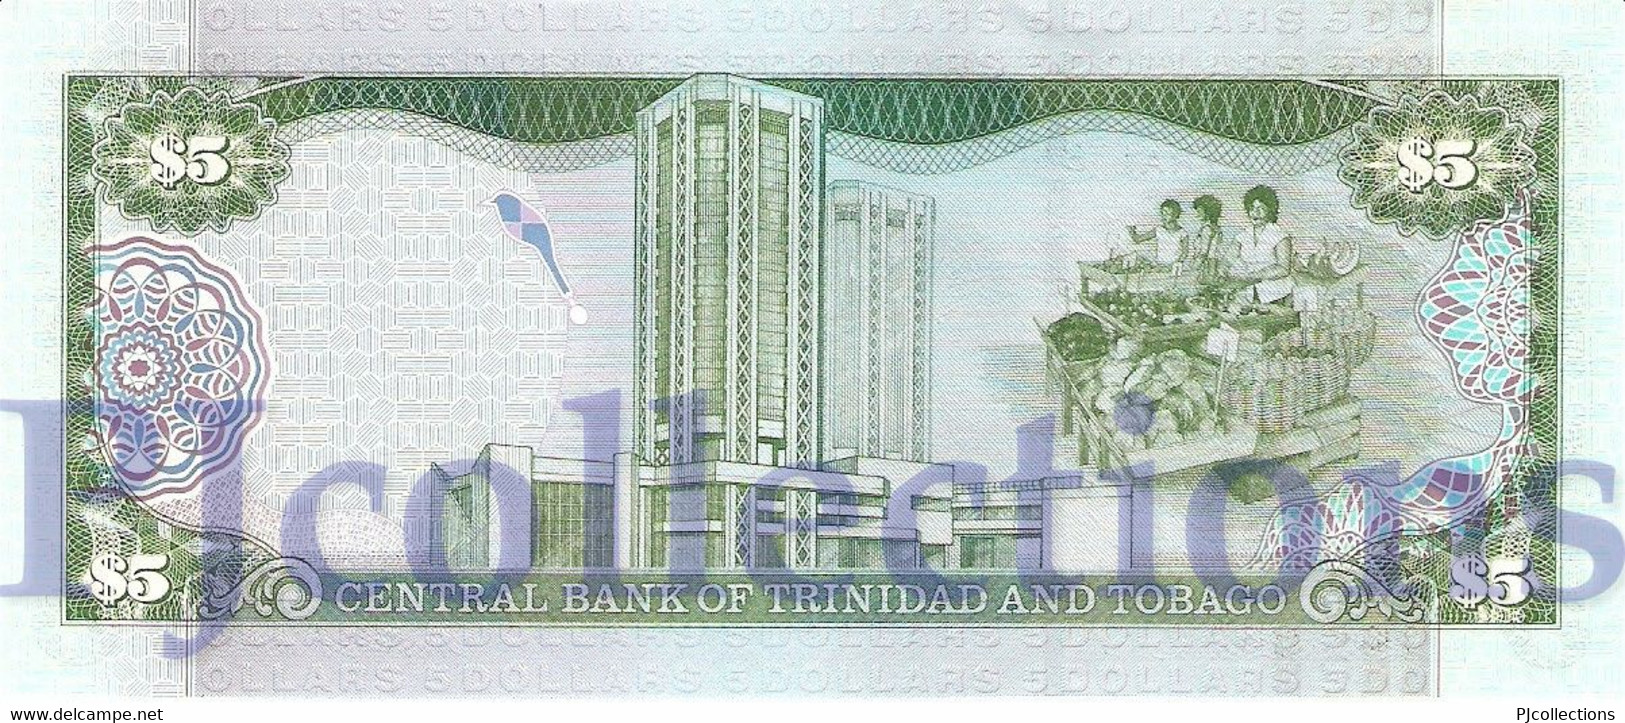 TRINIDAD & TOBAGO 5 DOLLARS 2002 PICK 42b UNC - Trindad & Tobago